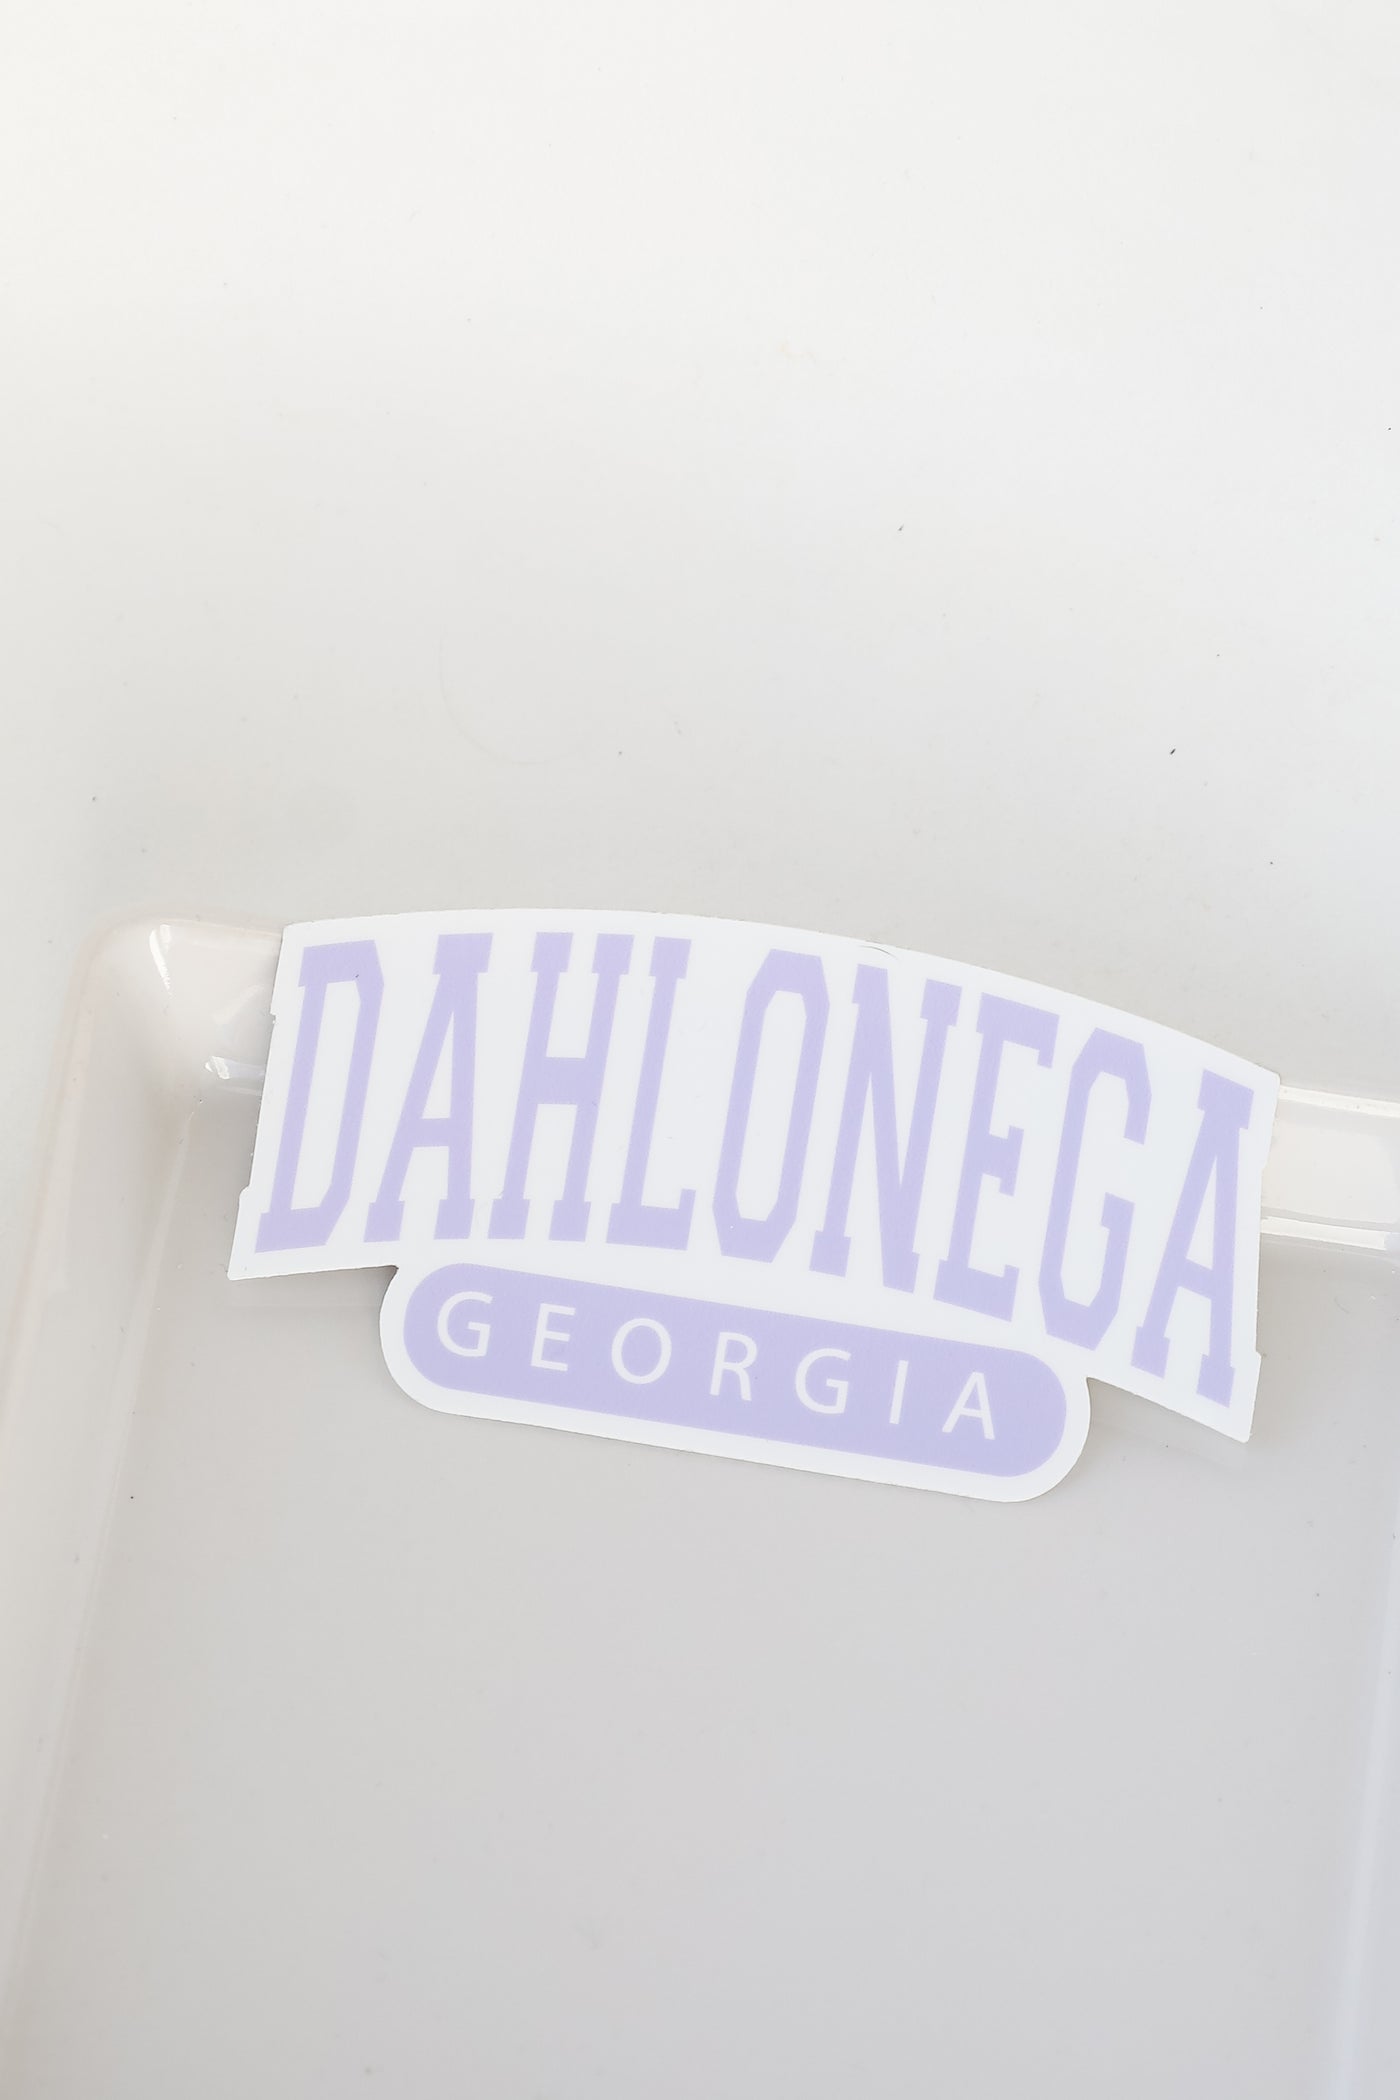 Dahlonega Georgia Sticker in purple